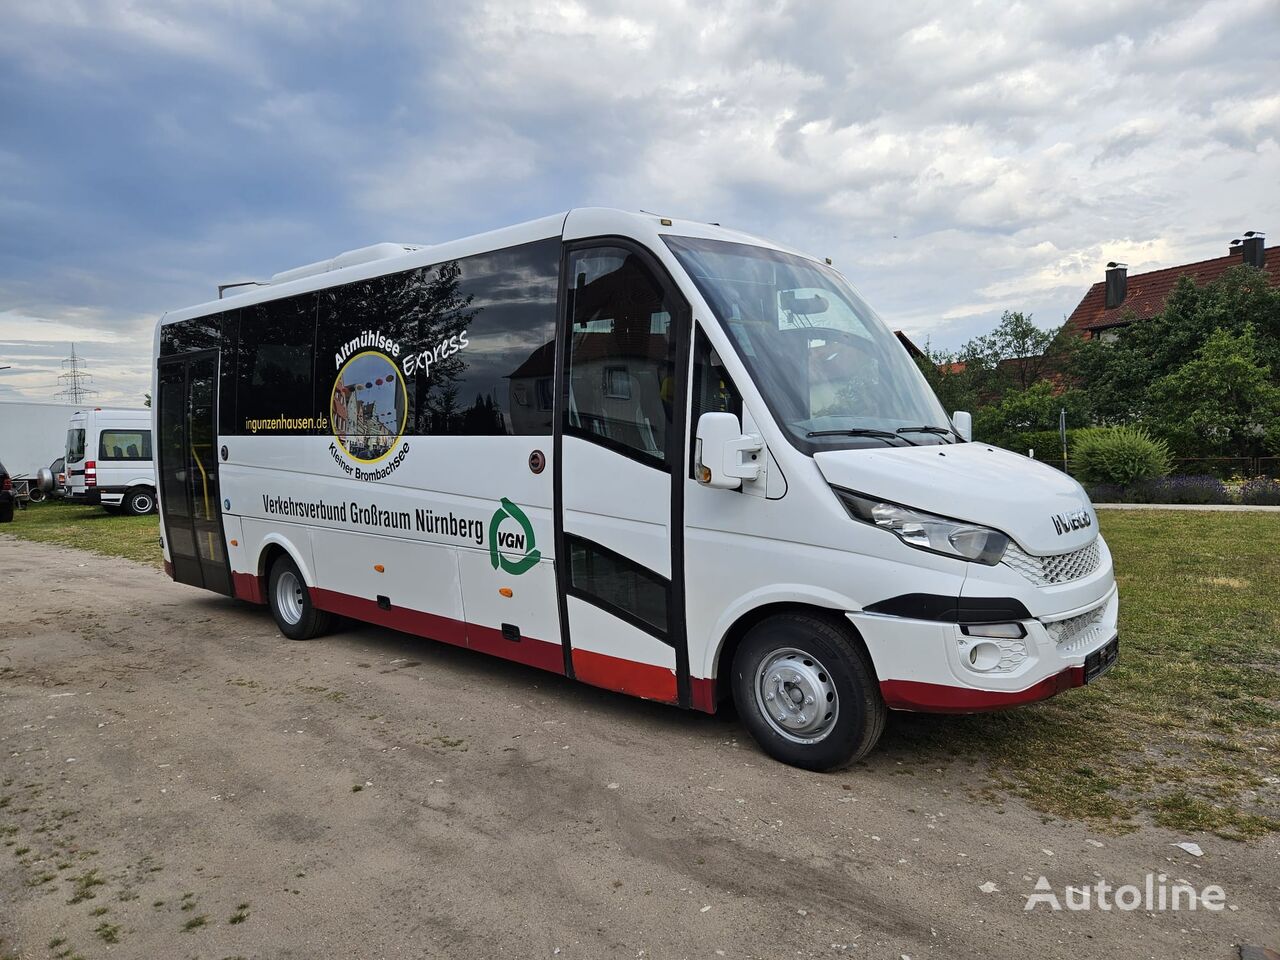 tarpmiestinis - priemiestinis autobusas IVECO Semiurbano, Model 2016, Telma, 2XKlima, New engine, 33 seats!